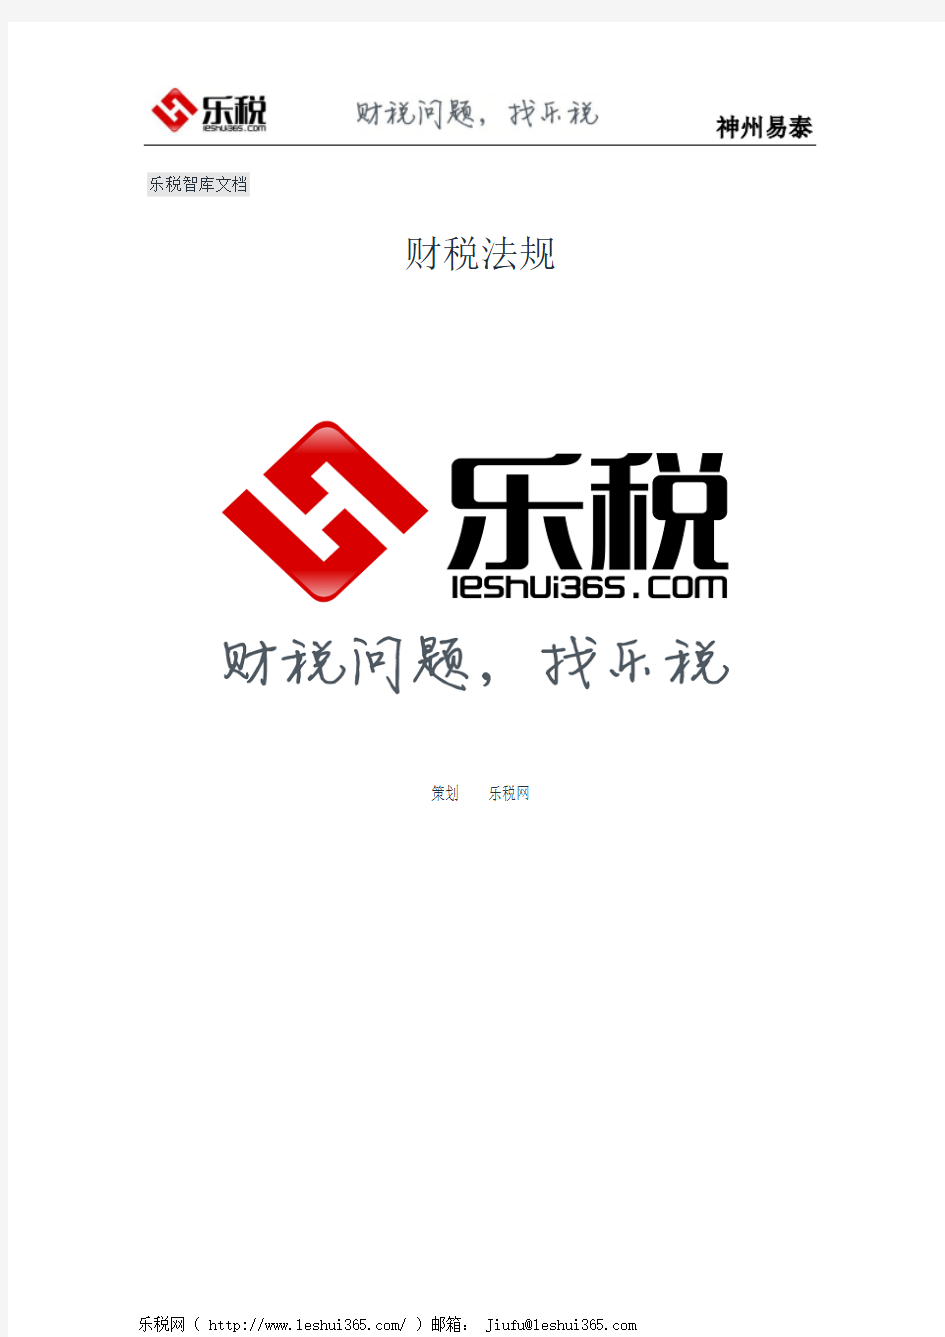 上海市国家税务局、地方税务局关于执行个人所得税若干政策文件的通知